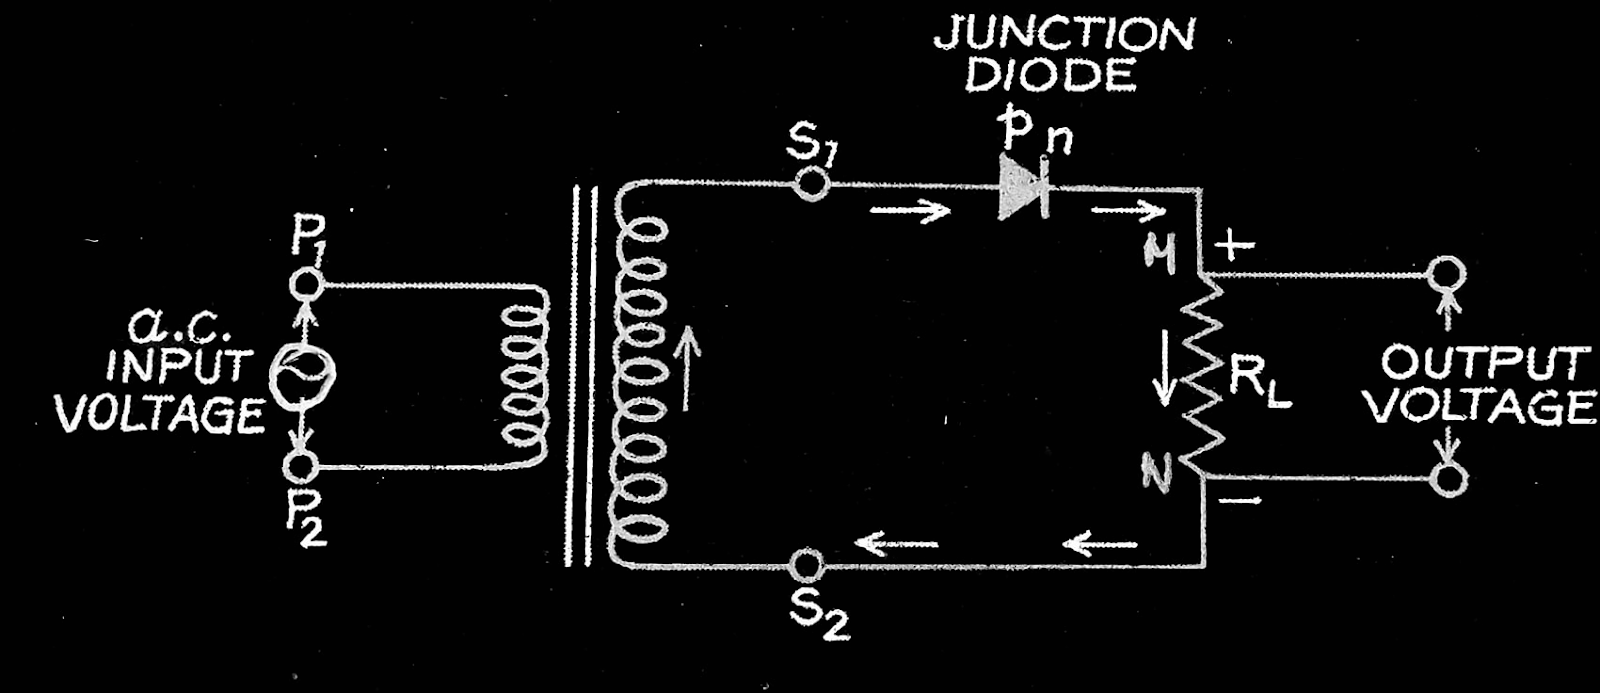 Half wave rectifier circuit diagram